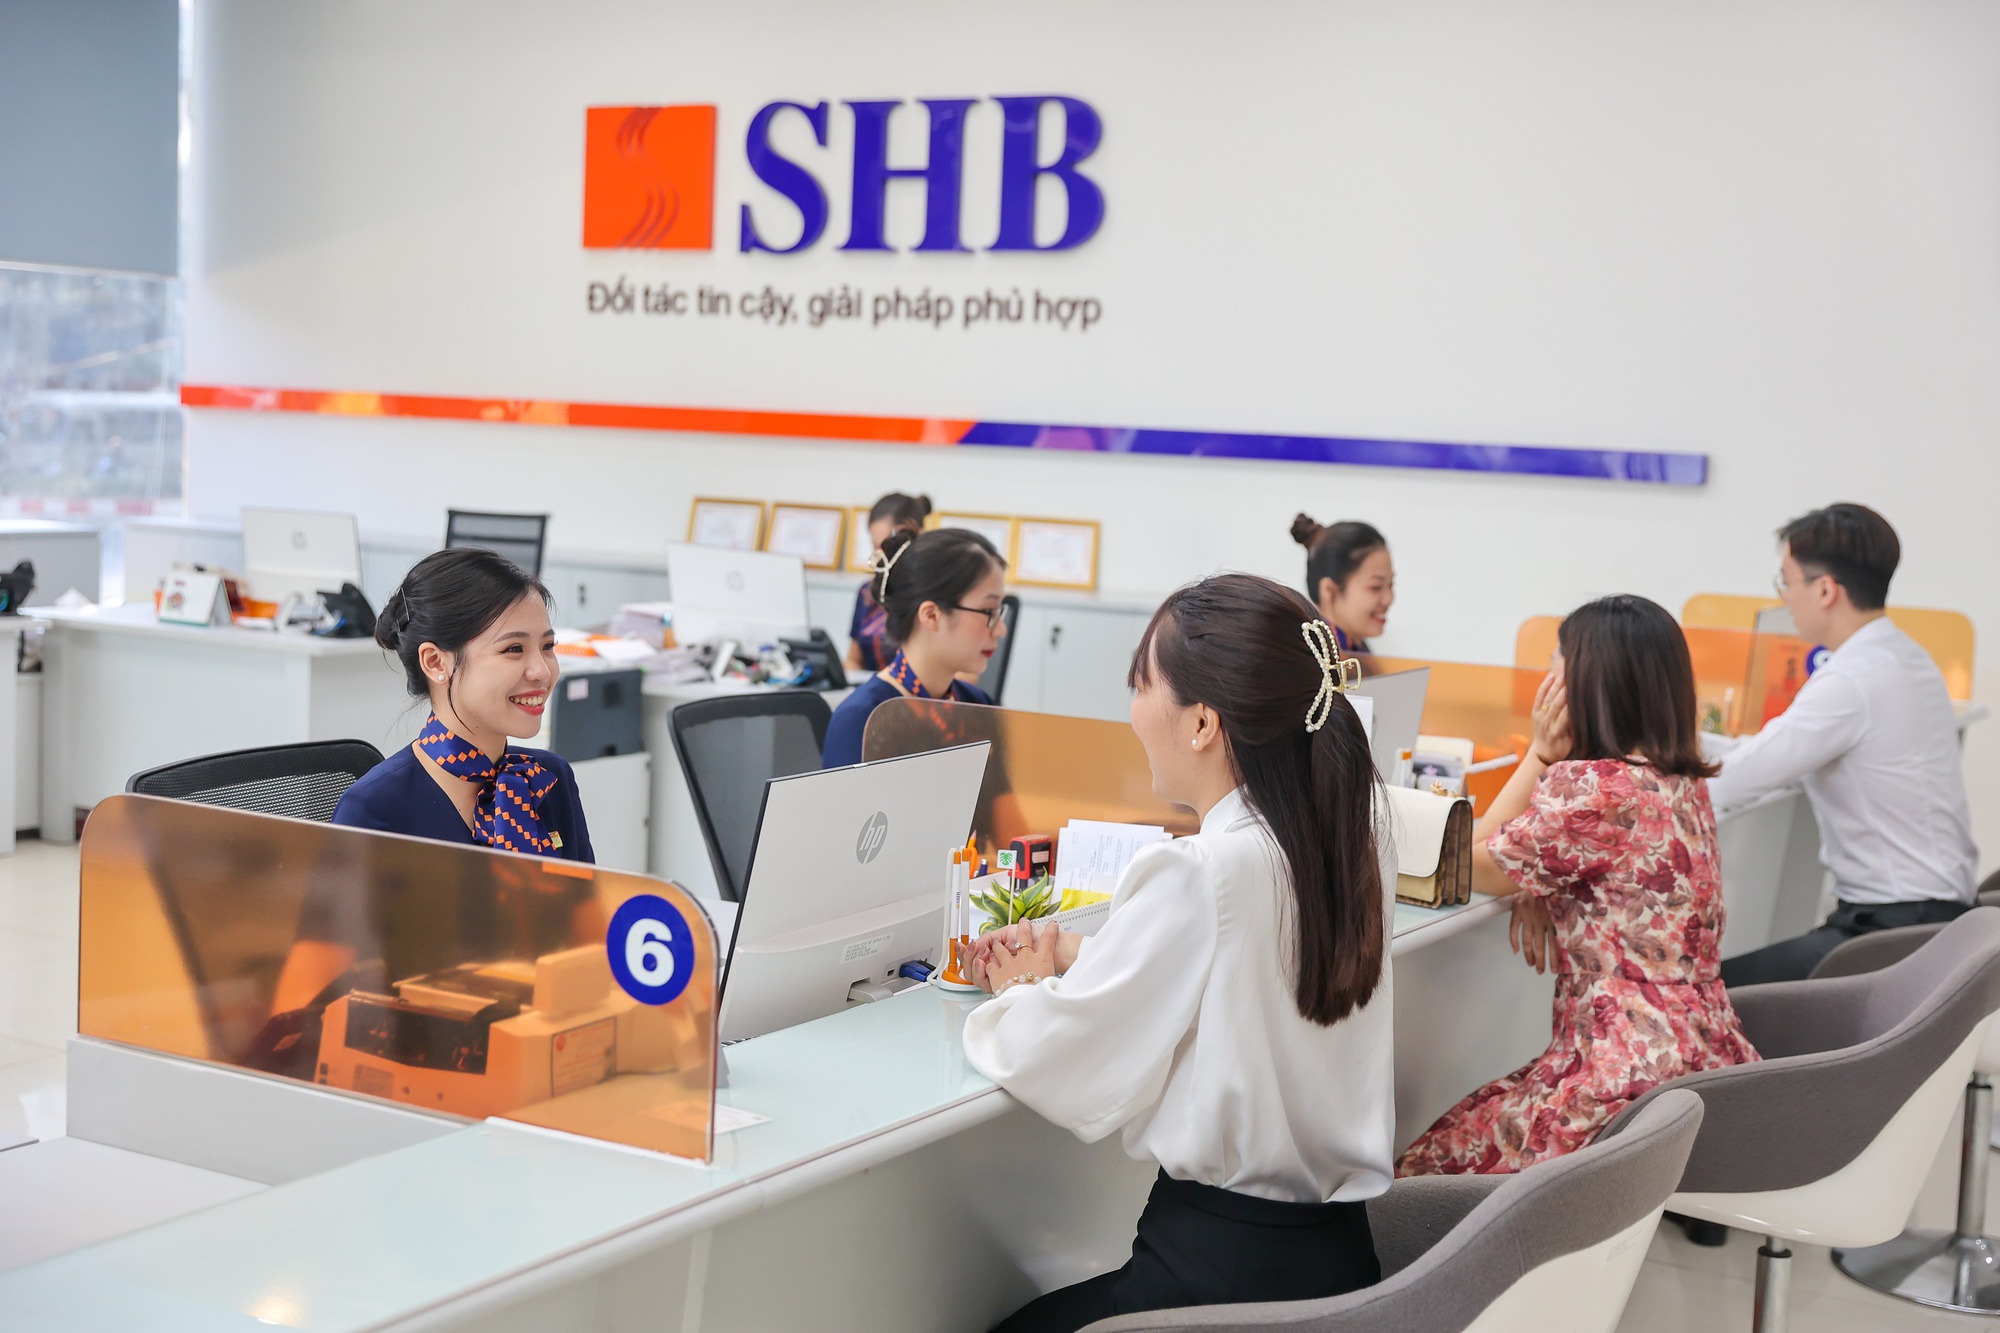 Thỏa thuận chuyển nhượng SHB Finance đem lại nguồn thặng dư vốn đáng kể cho SHB cũng như nâng cao năng lực tài chính và vị thế của Ngân hàng